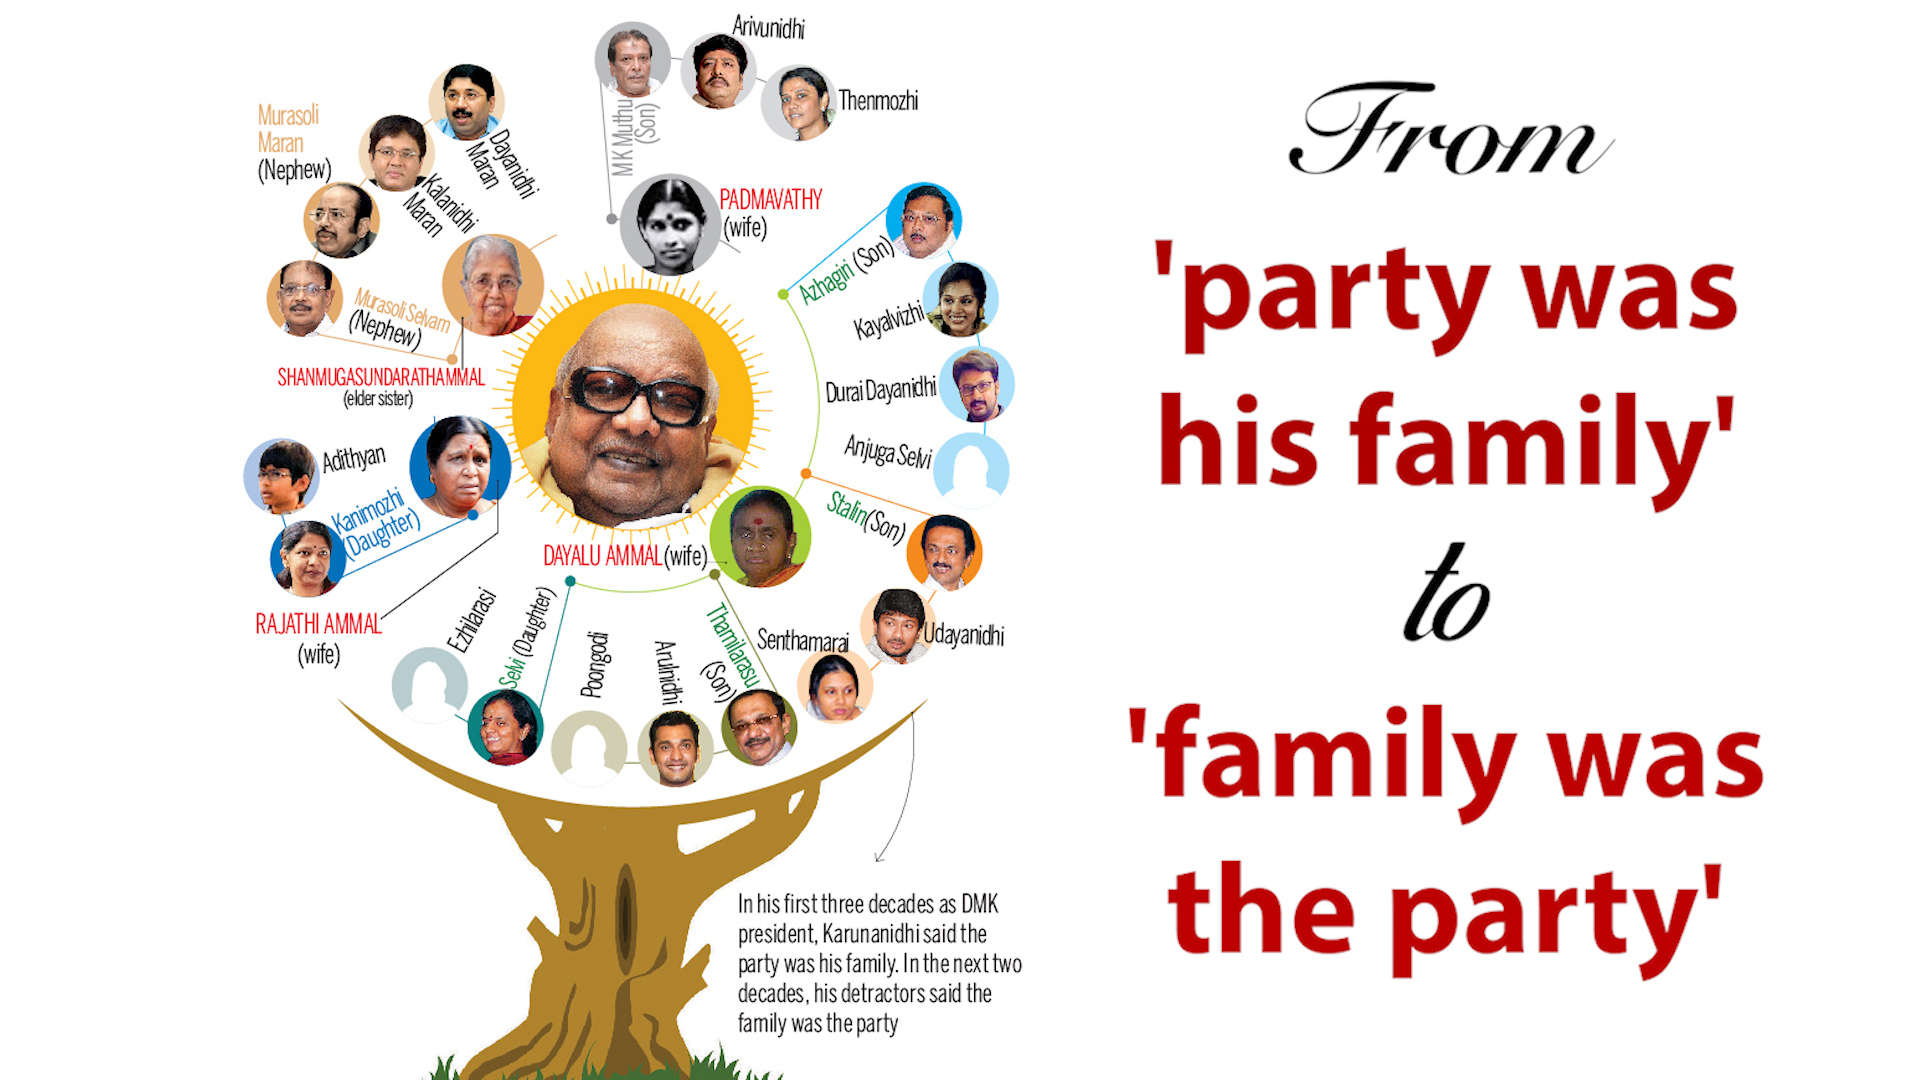 M Karunanidhi Family Chart